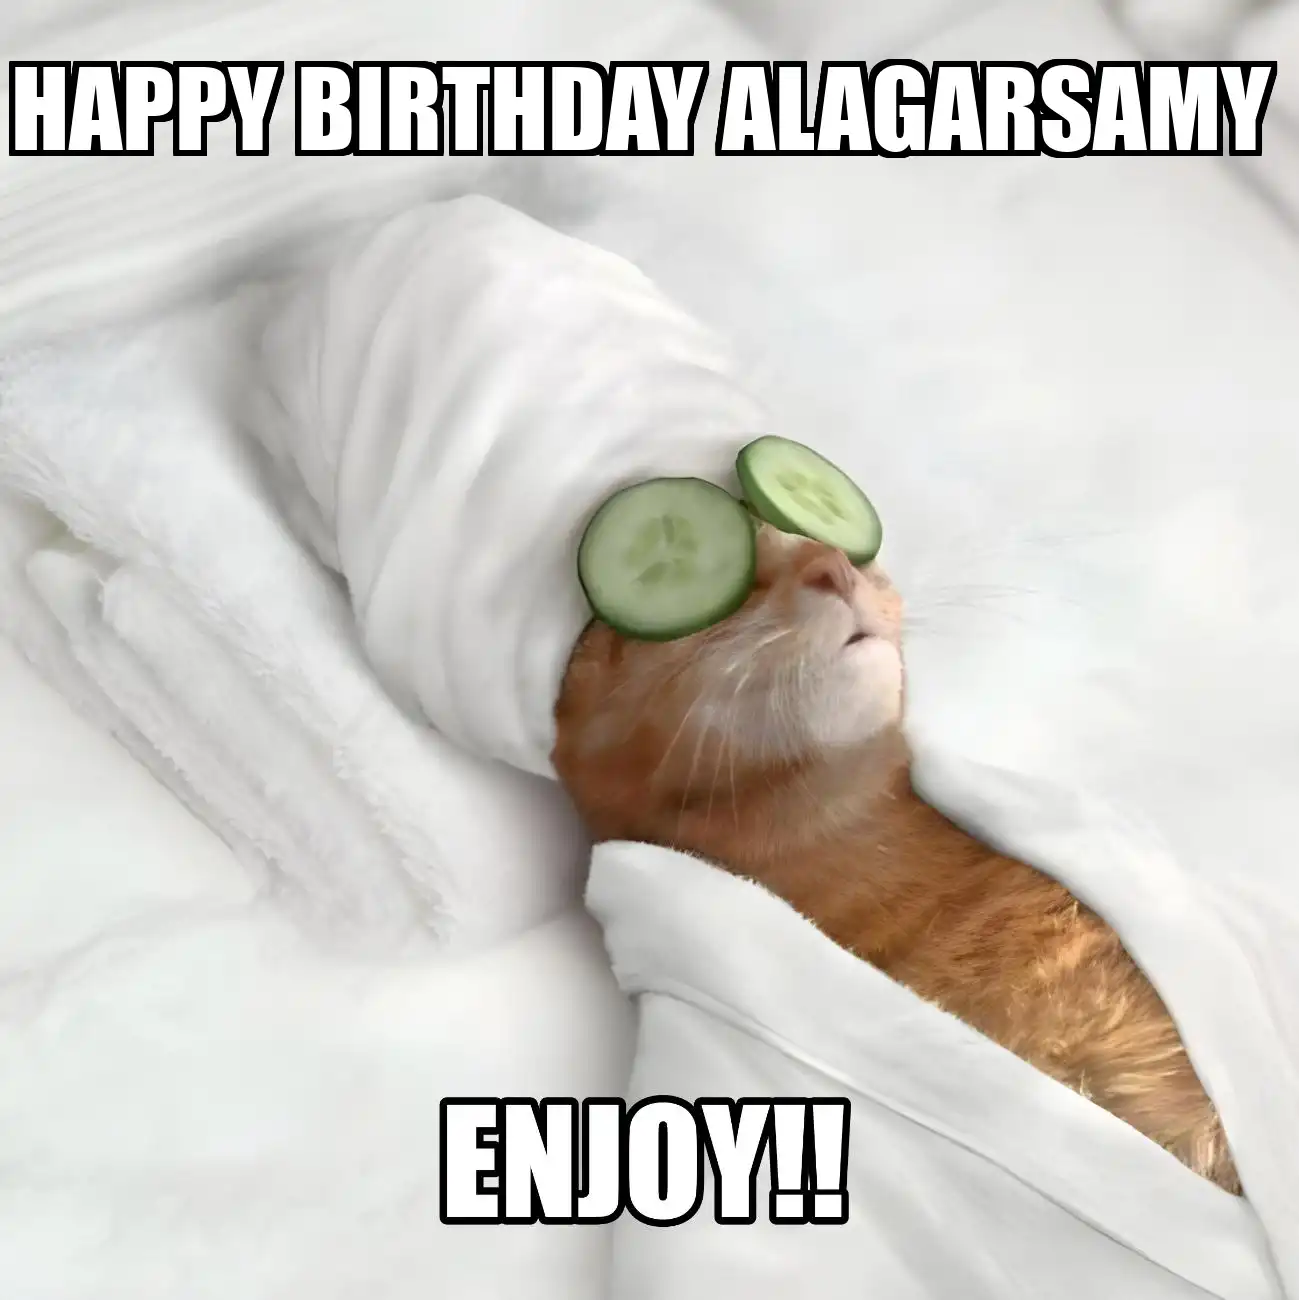 Happy Birthday Alagarsamy Enjoy Cat Meme